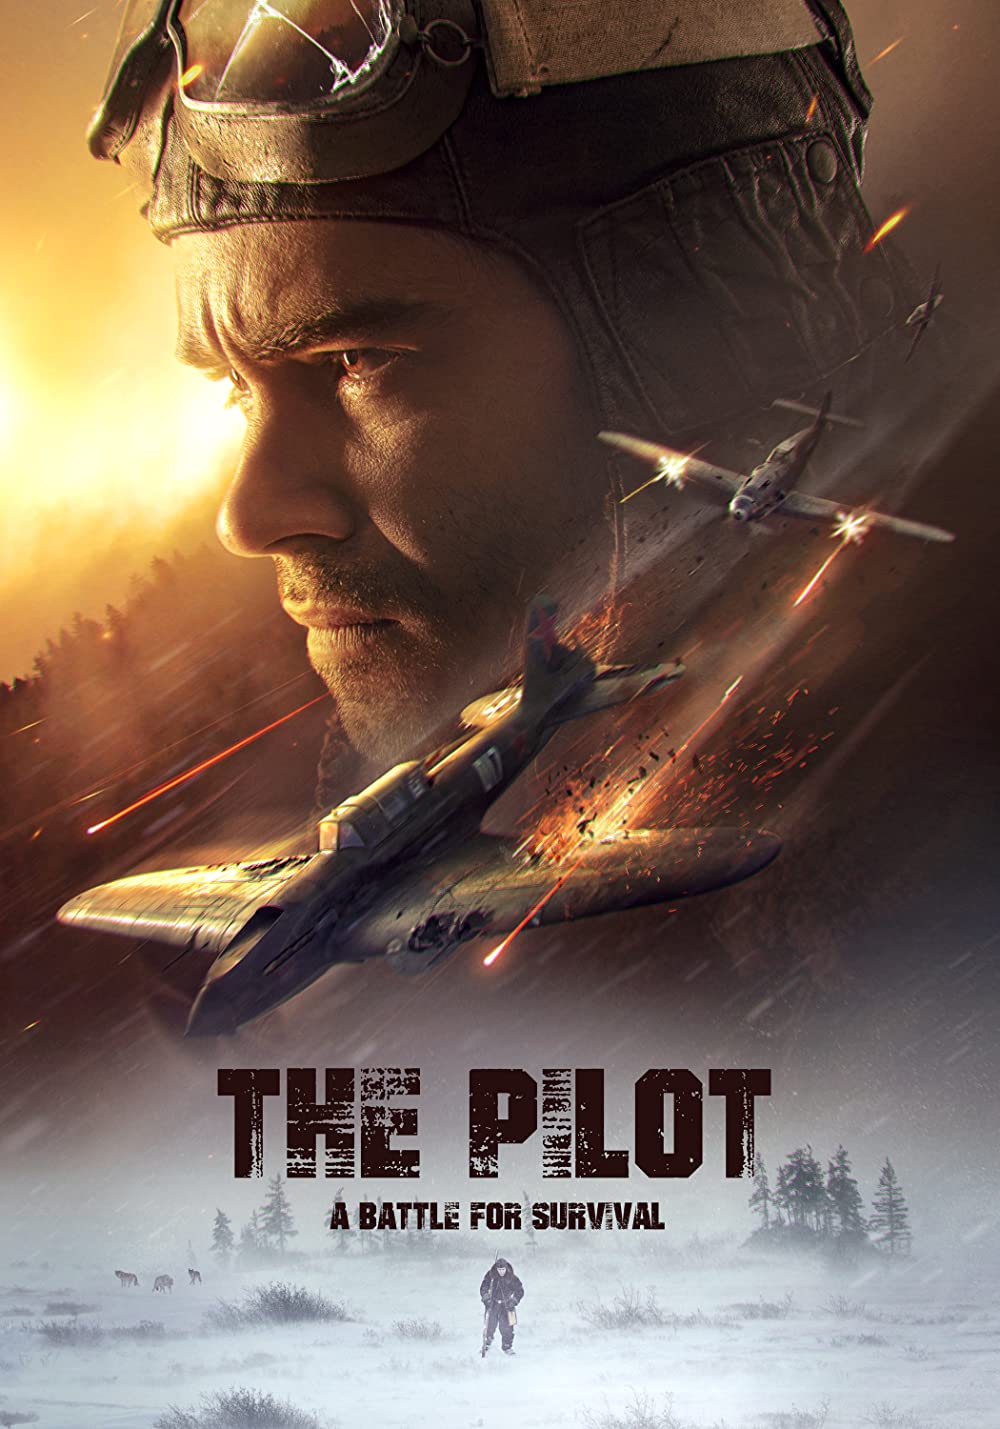  The Pilot. A Battle for Survival / Ljotcik (2021)[WebRip] = CSFD 84%